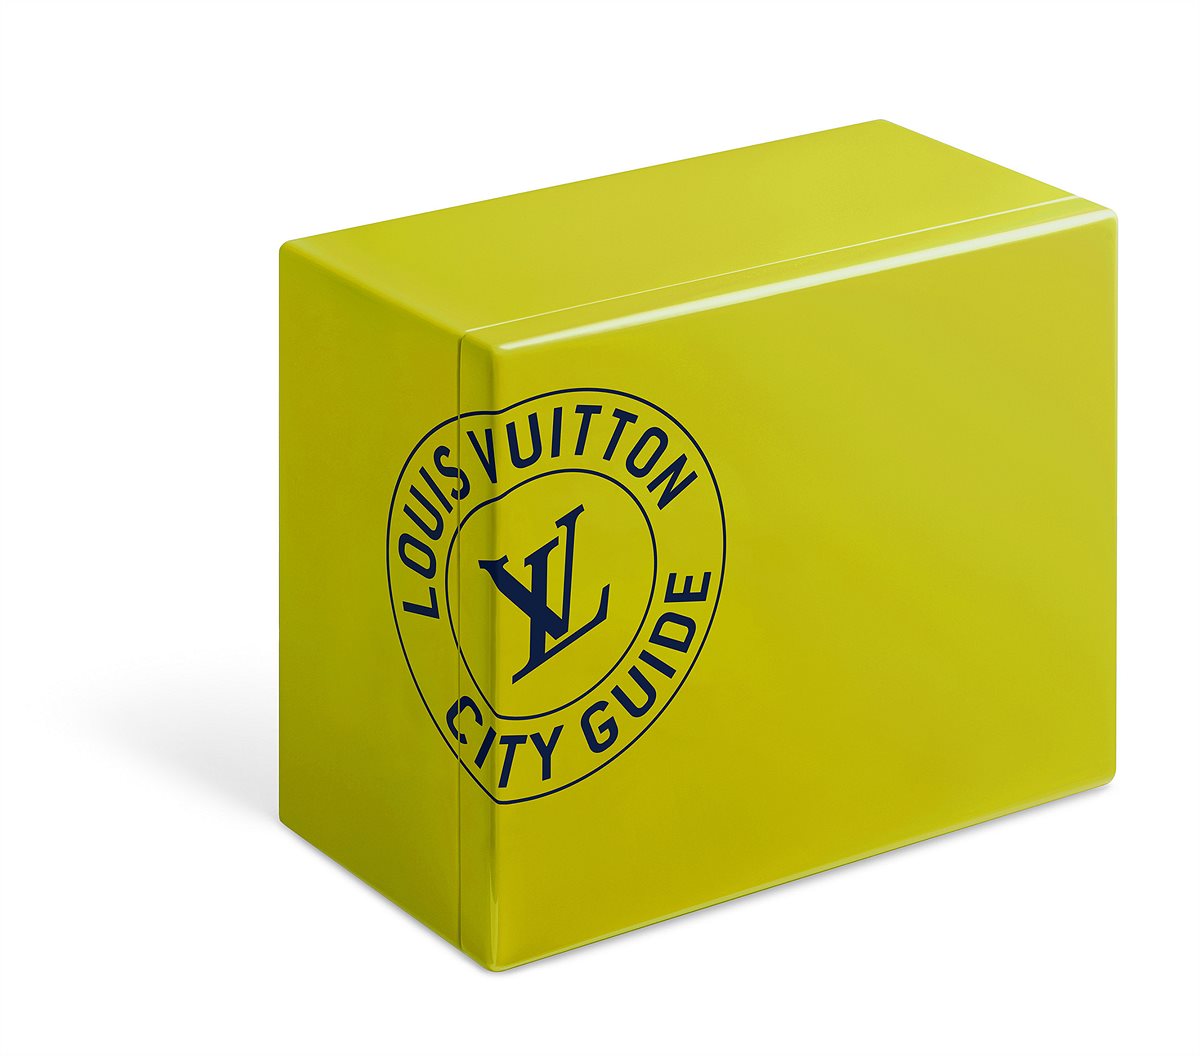 LOUIS VUITTON_City Guide Box Set_EUR 600_Cape Town Green